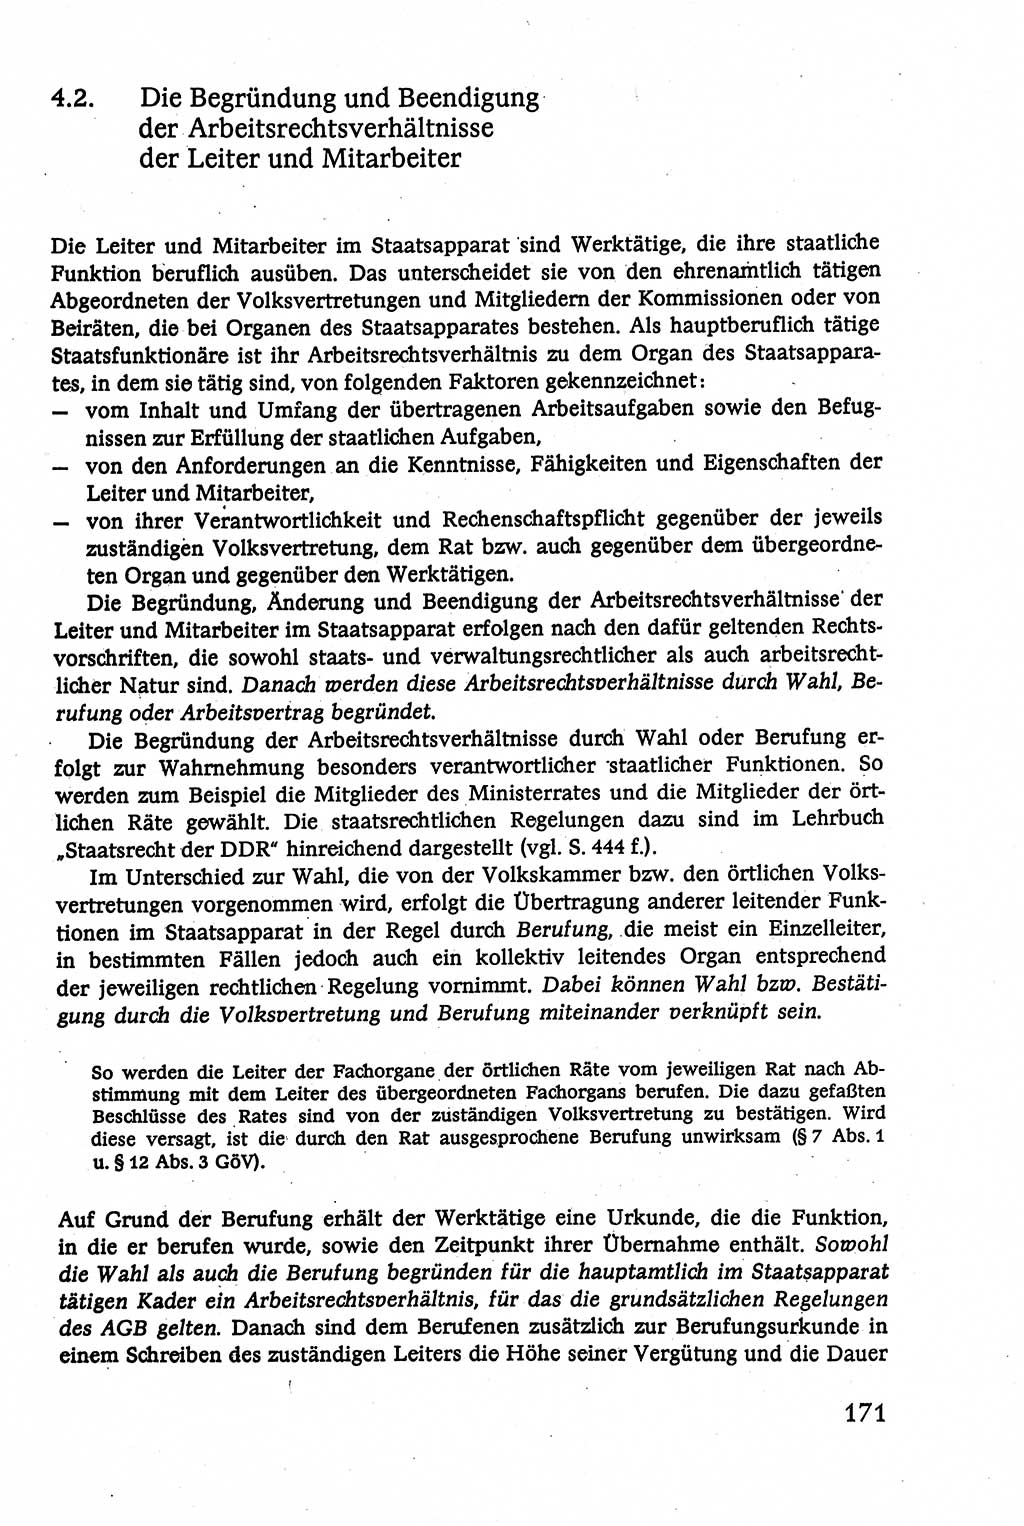 Verwaltungsrecht [Deutsche Demokratische Republik (DDR)], Lehrbuch 1979, Seite 171 (Verw.-R. DDR Lb. 1979, S. 171)